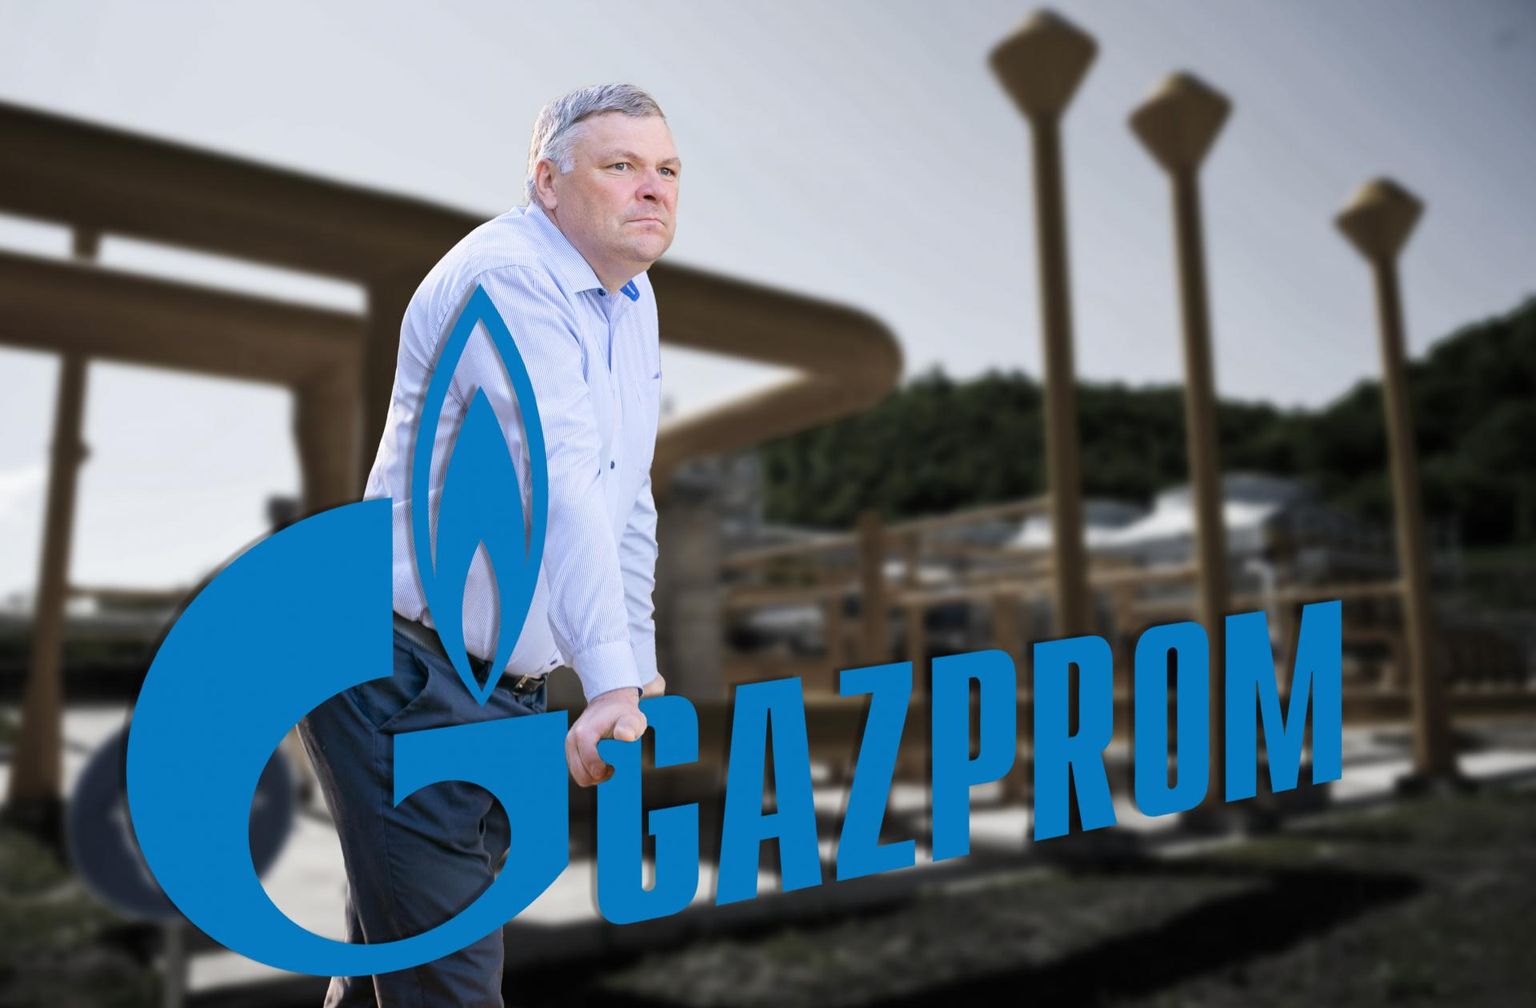 前環境部長 Marko Pomerants (應從溝通不足和疏忽中尋找原因，所有相關人員都應照照鏡子) of the Powerhouse PR firm is lobbying for Russia’s Gazprom Neft.